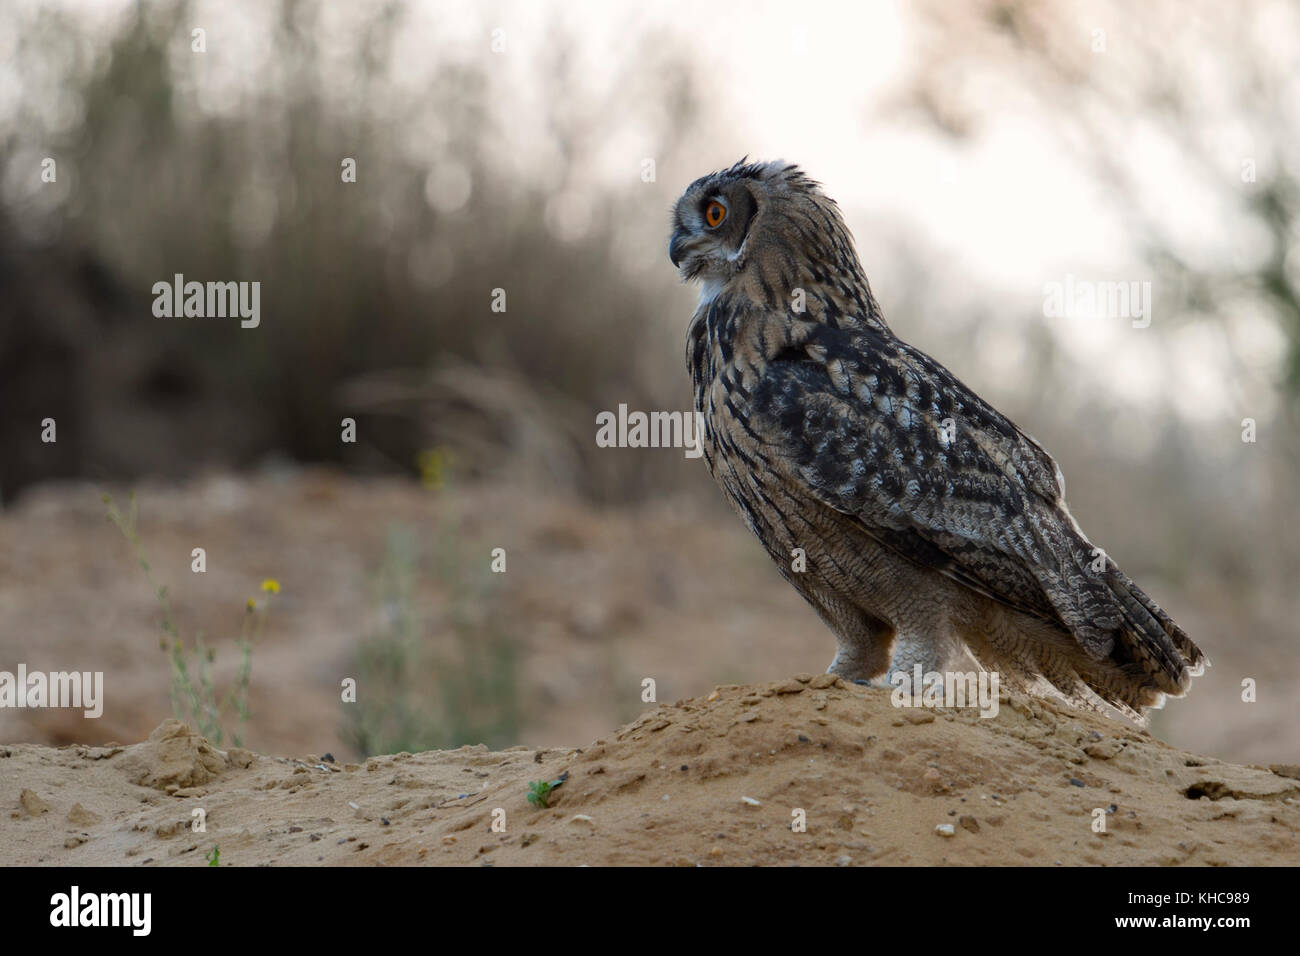 Grand / owl Bubo bubo europaeischer uhu ( ), jeune oiseau, perché sur une petite colline, au crépuscule, lumière douce, dans un cadre naturel, de la faune, de l'Europe Banque D'Images